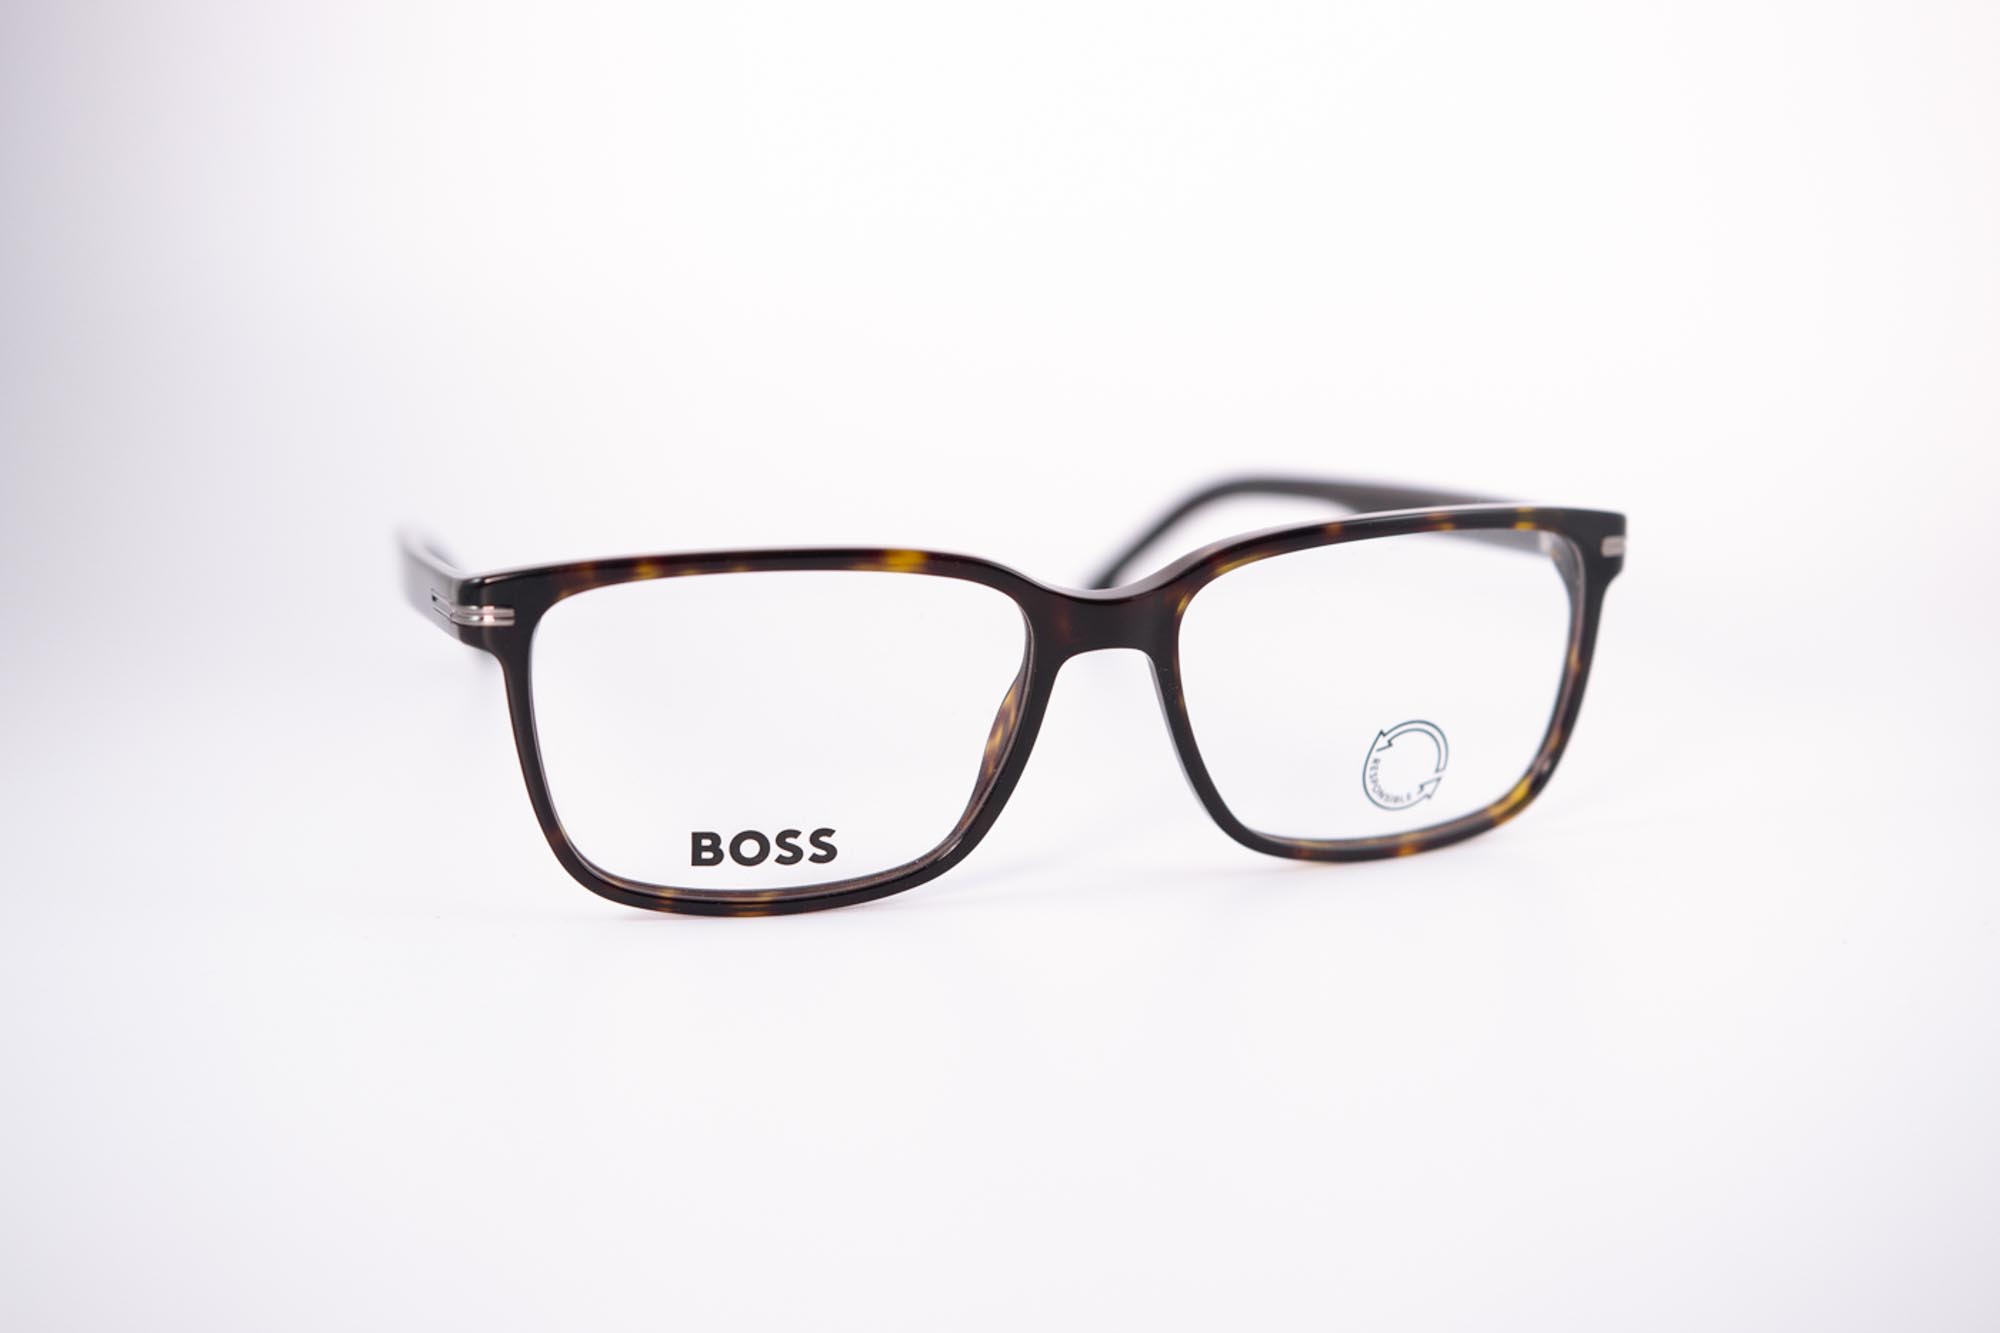 Herrenbrille Damenbrille Unisex BOSS Acetet Kunststoff Braun Havanna